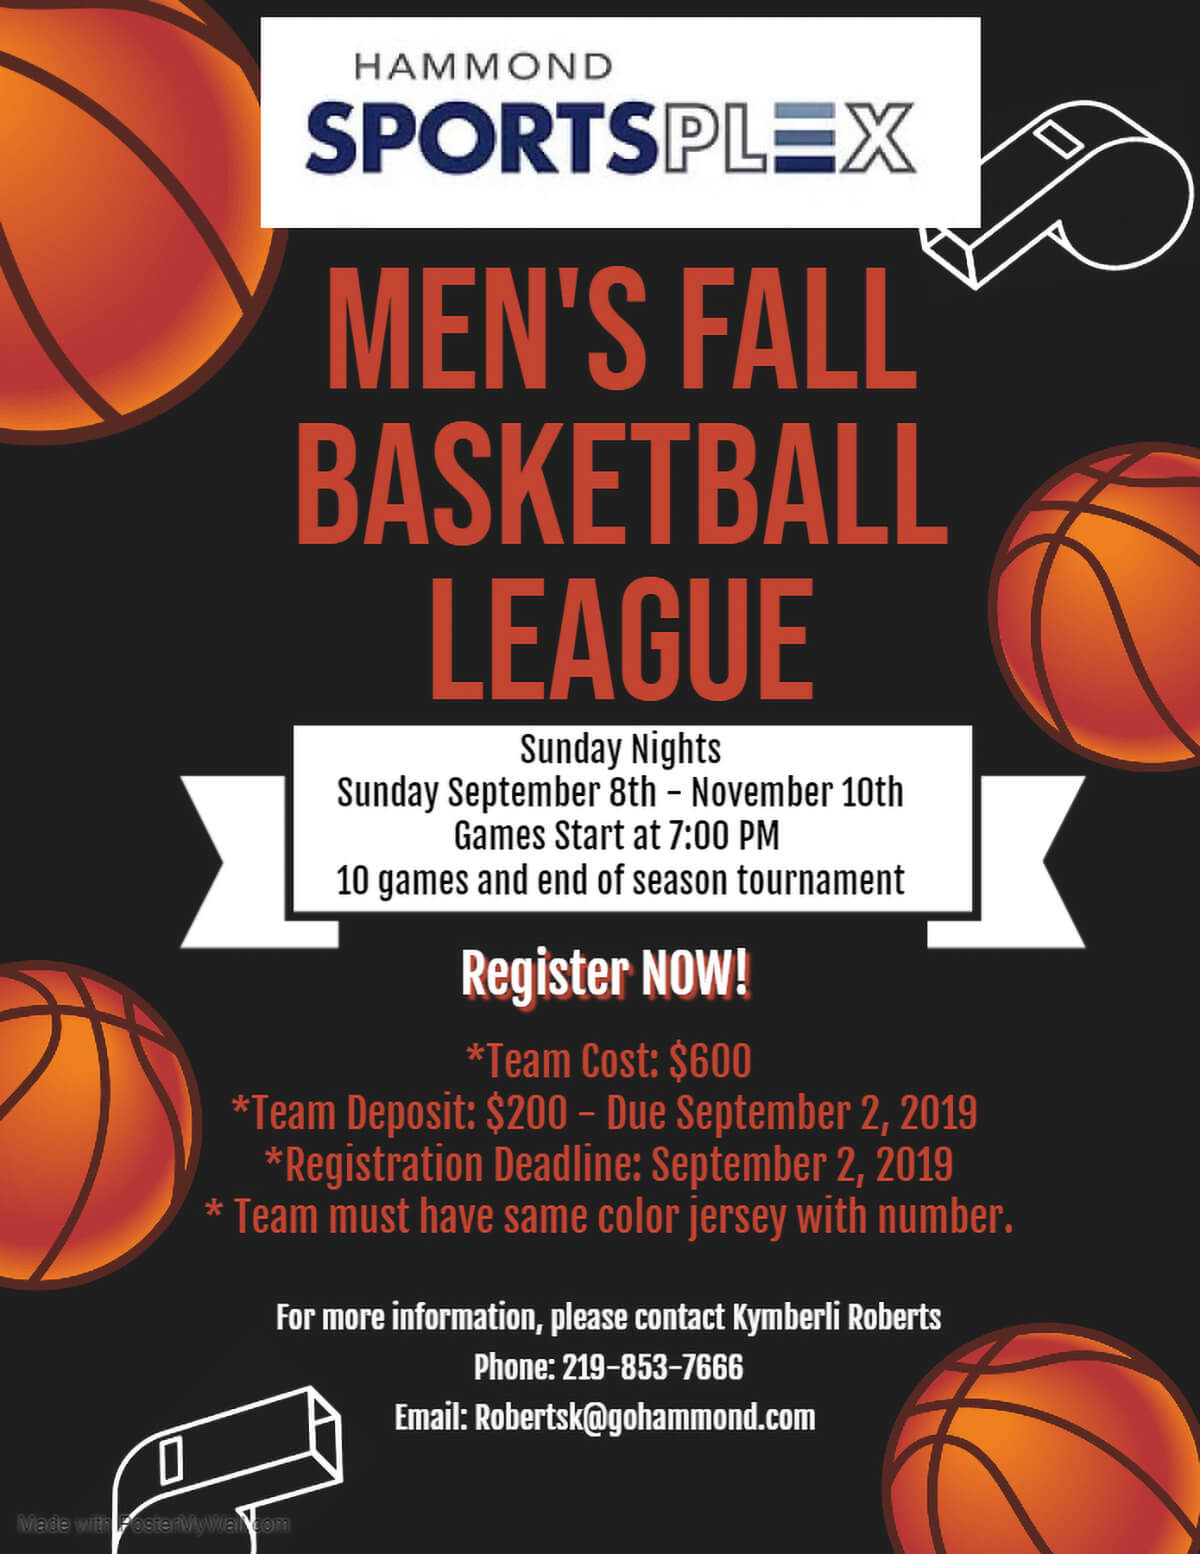 Hammond Sportsplex to Host Men’s Fall Basketball League